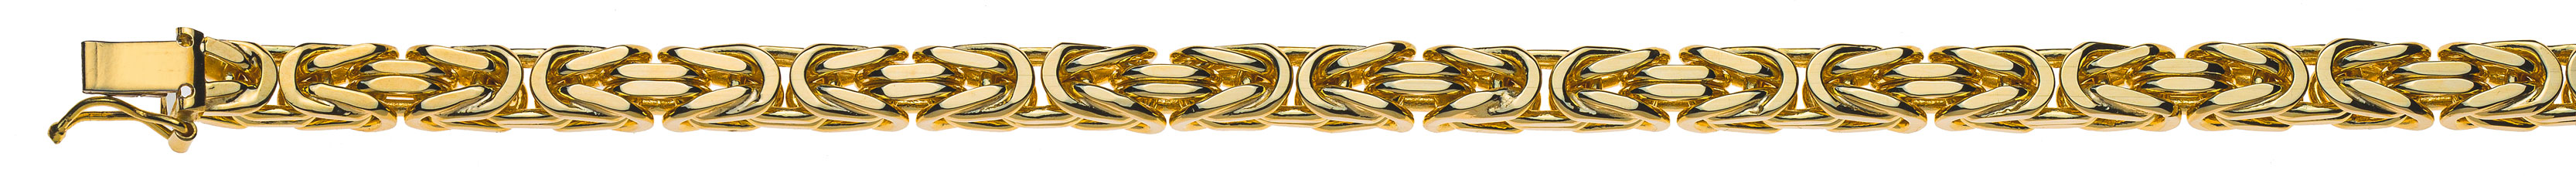 AURONOS Prestige Halskette Gelbgold 18K Königskette 55cm 5mm